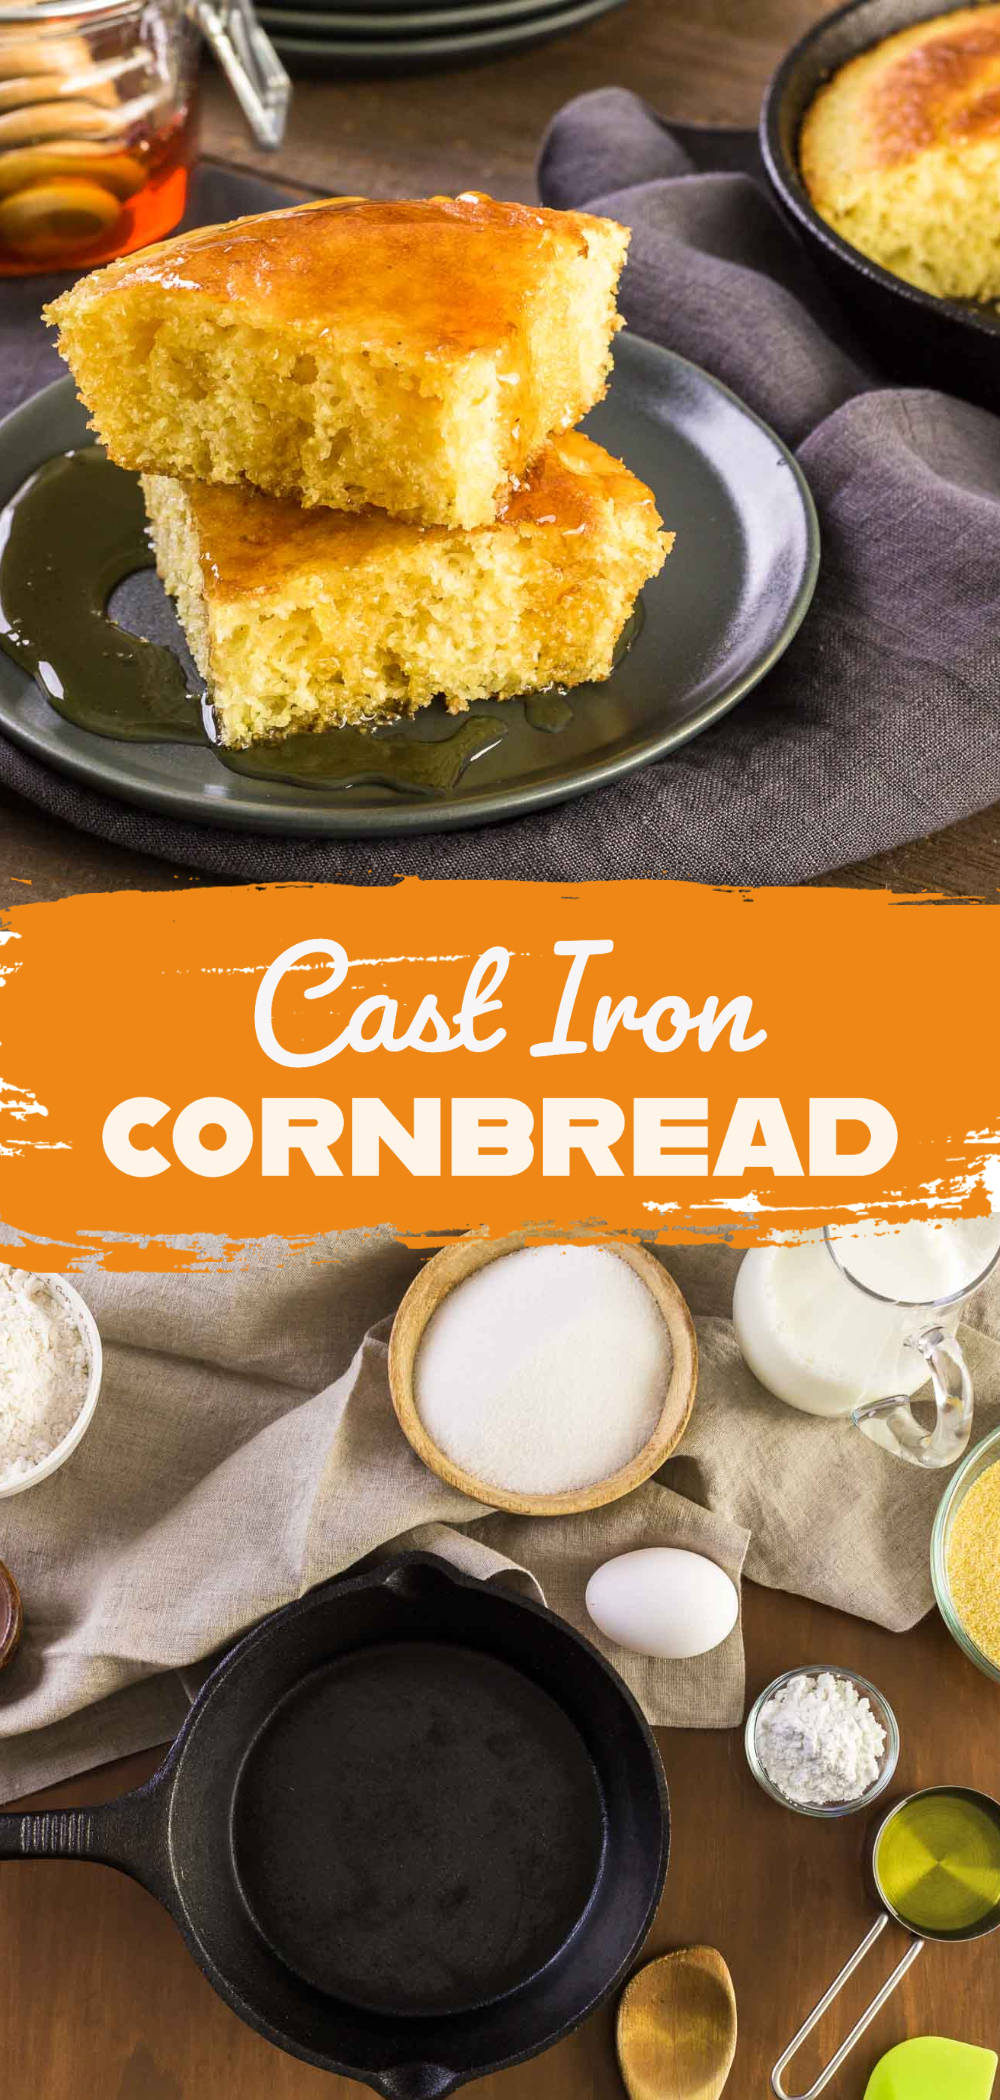 Cast iron cornbread